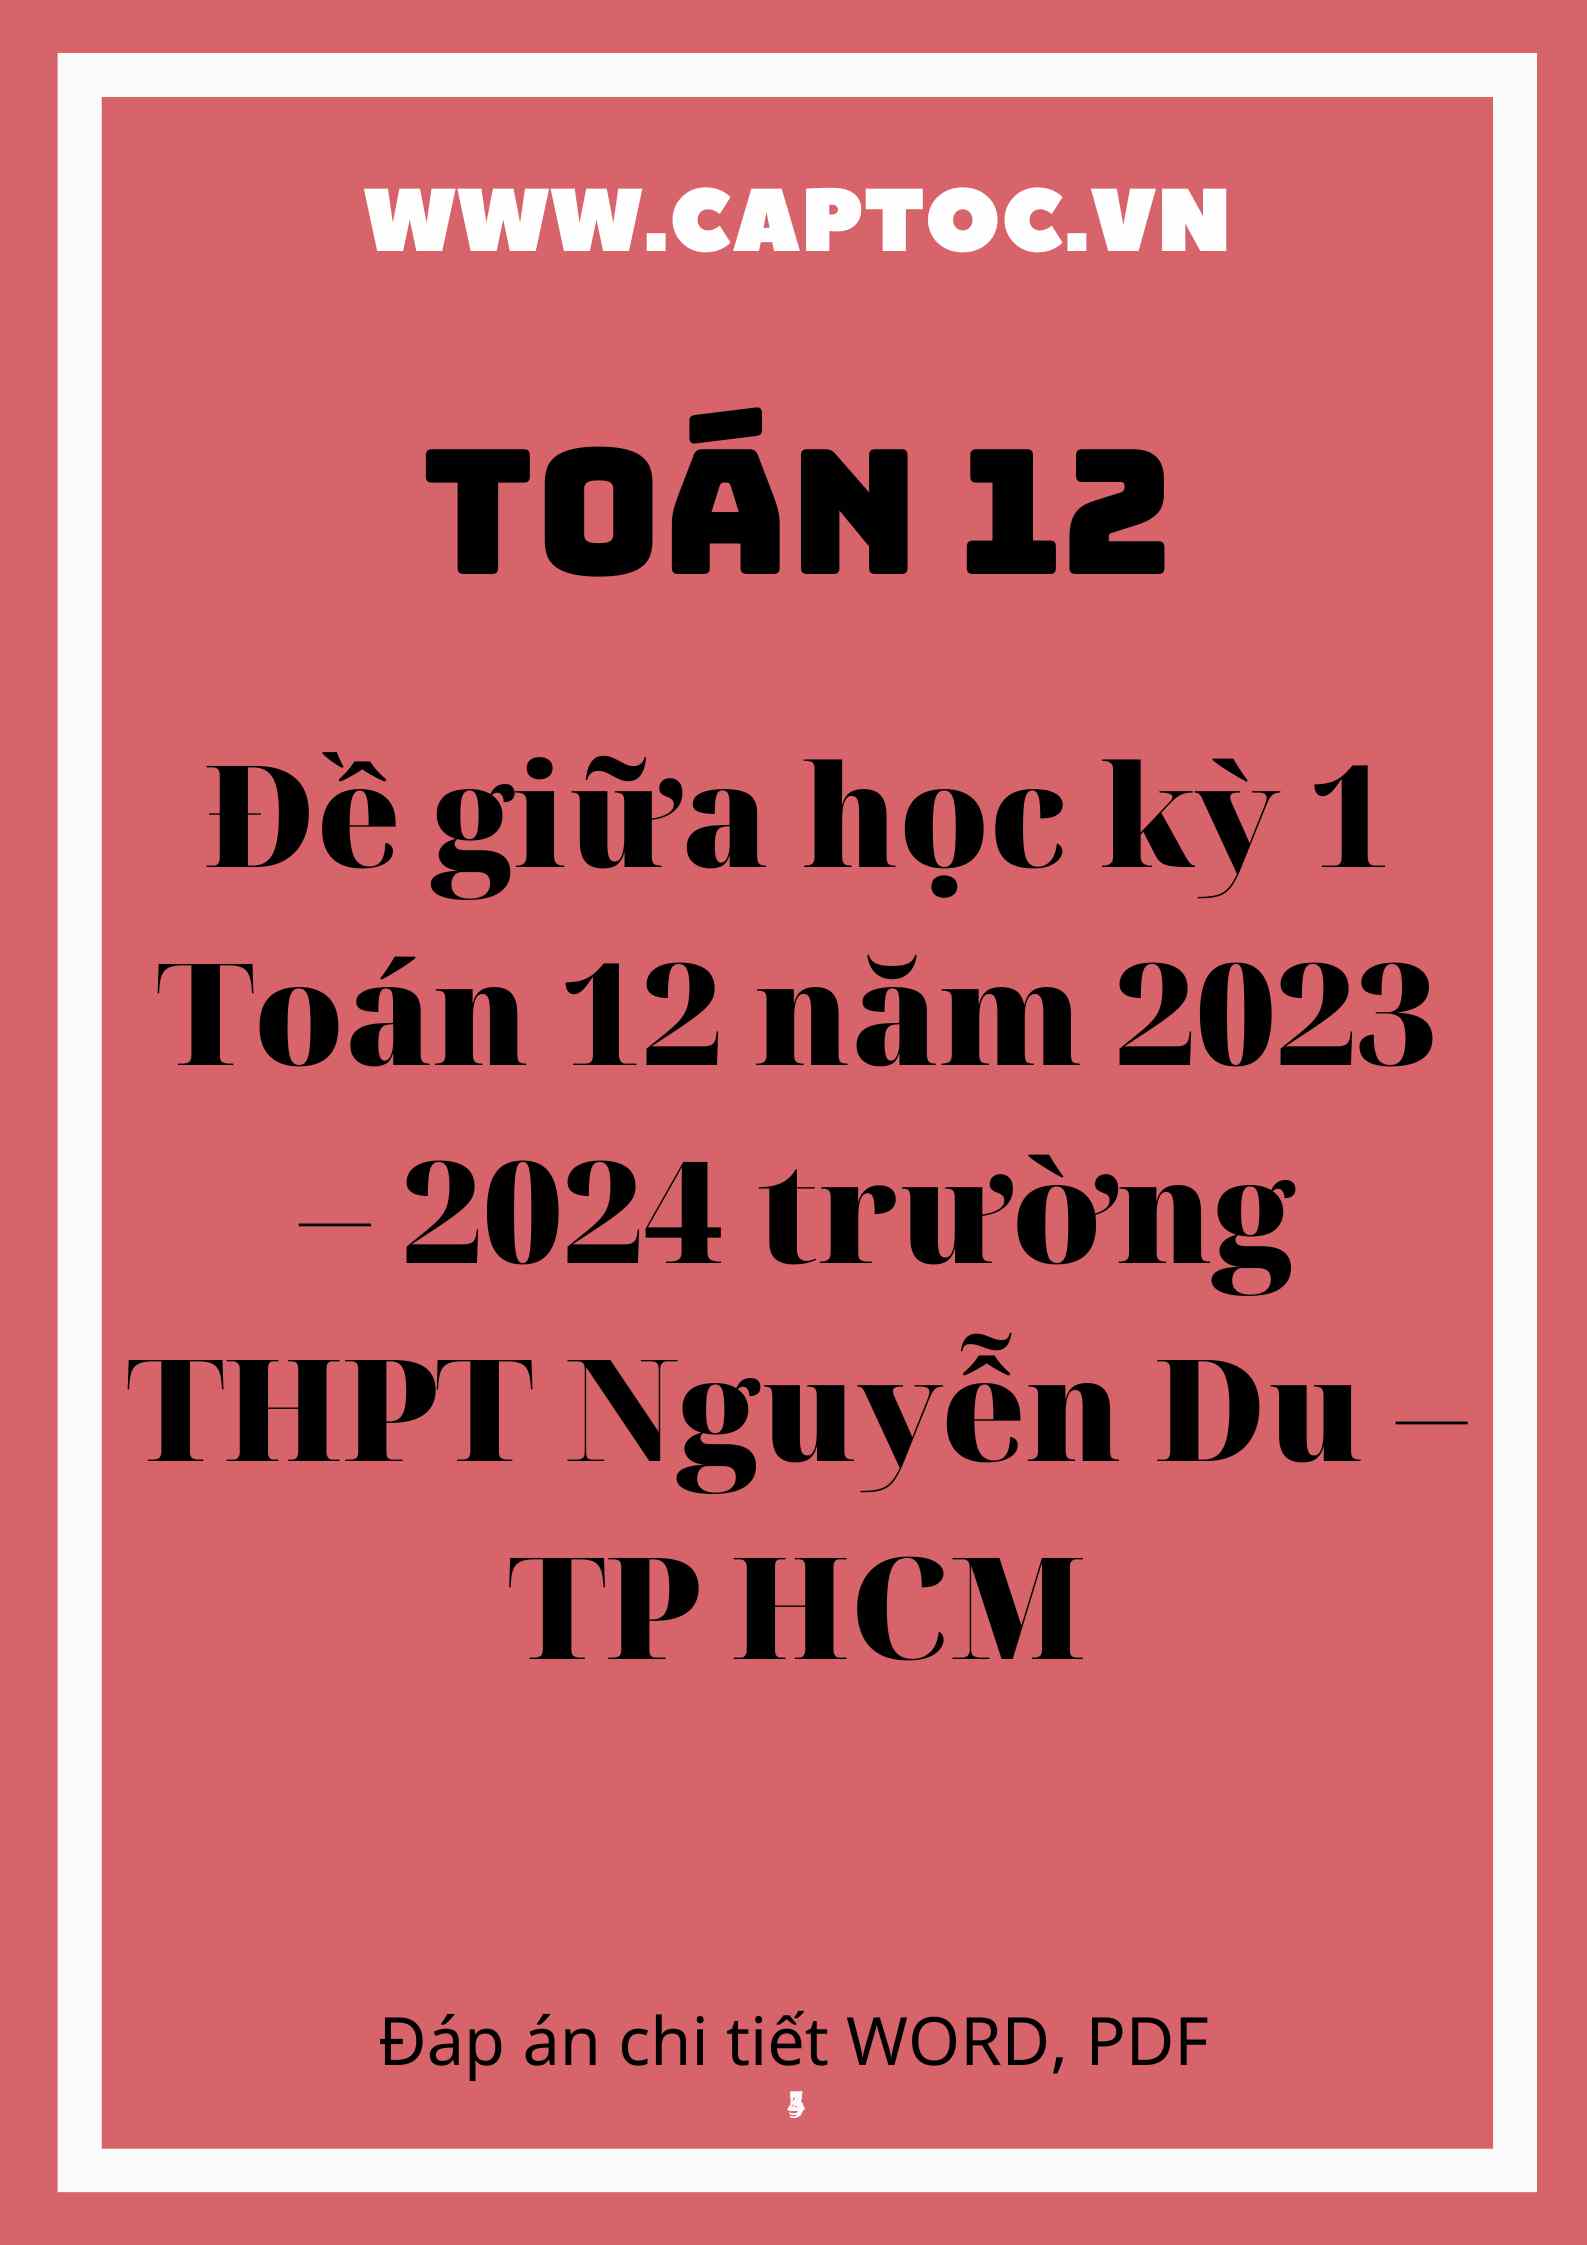 Đề giữa học kỳ 1 Toán 12 năm 2023 – 2024 trường THPT Nguyễn Du – TP HCM